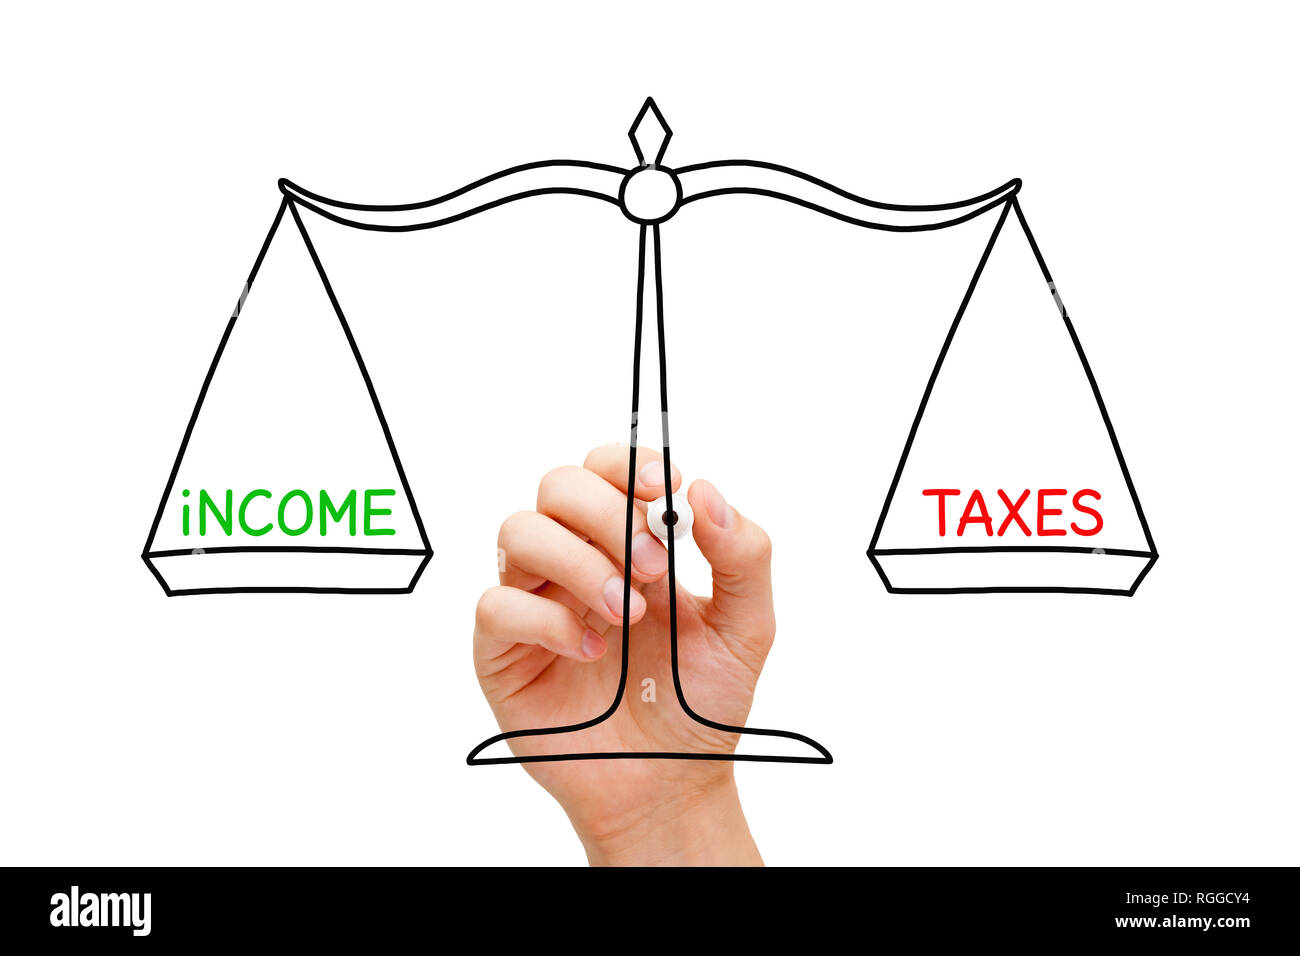 Handzeichnung Einkommen und Steuern Balance Scale-Konzept mit Marker auf Transparenten abwischen Board auf Weiß isoliert. Stockfoto